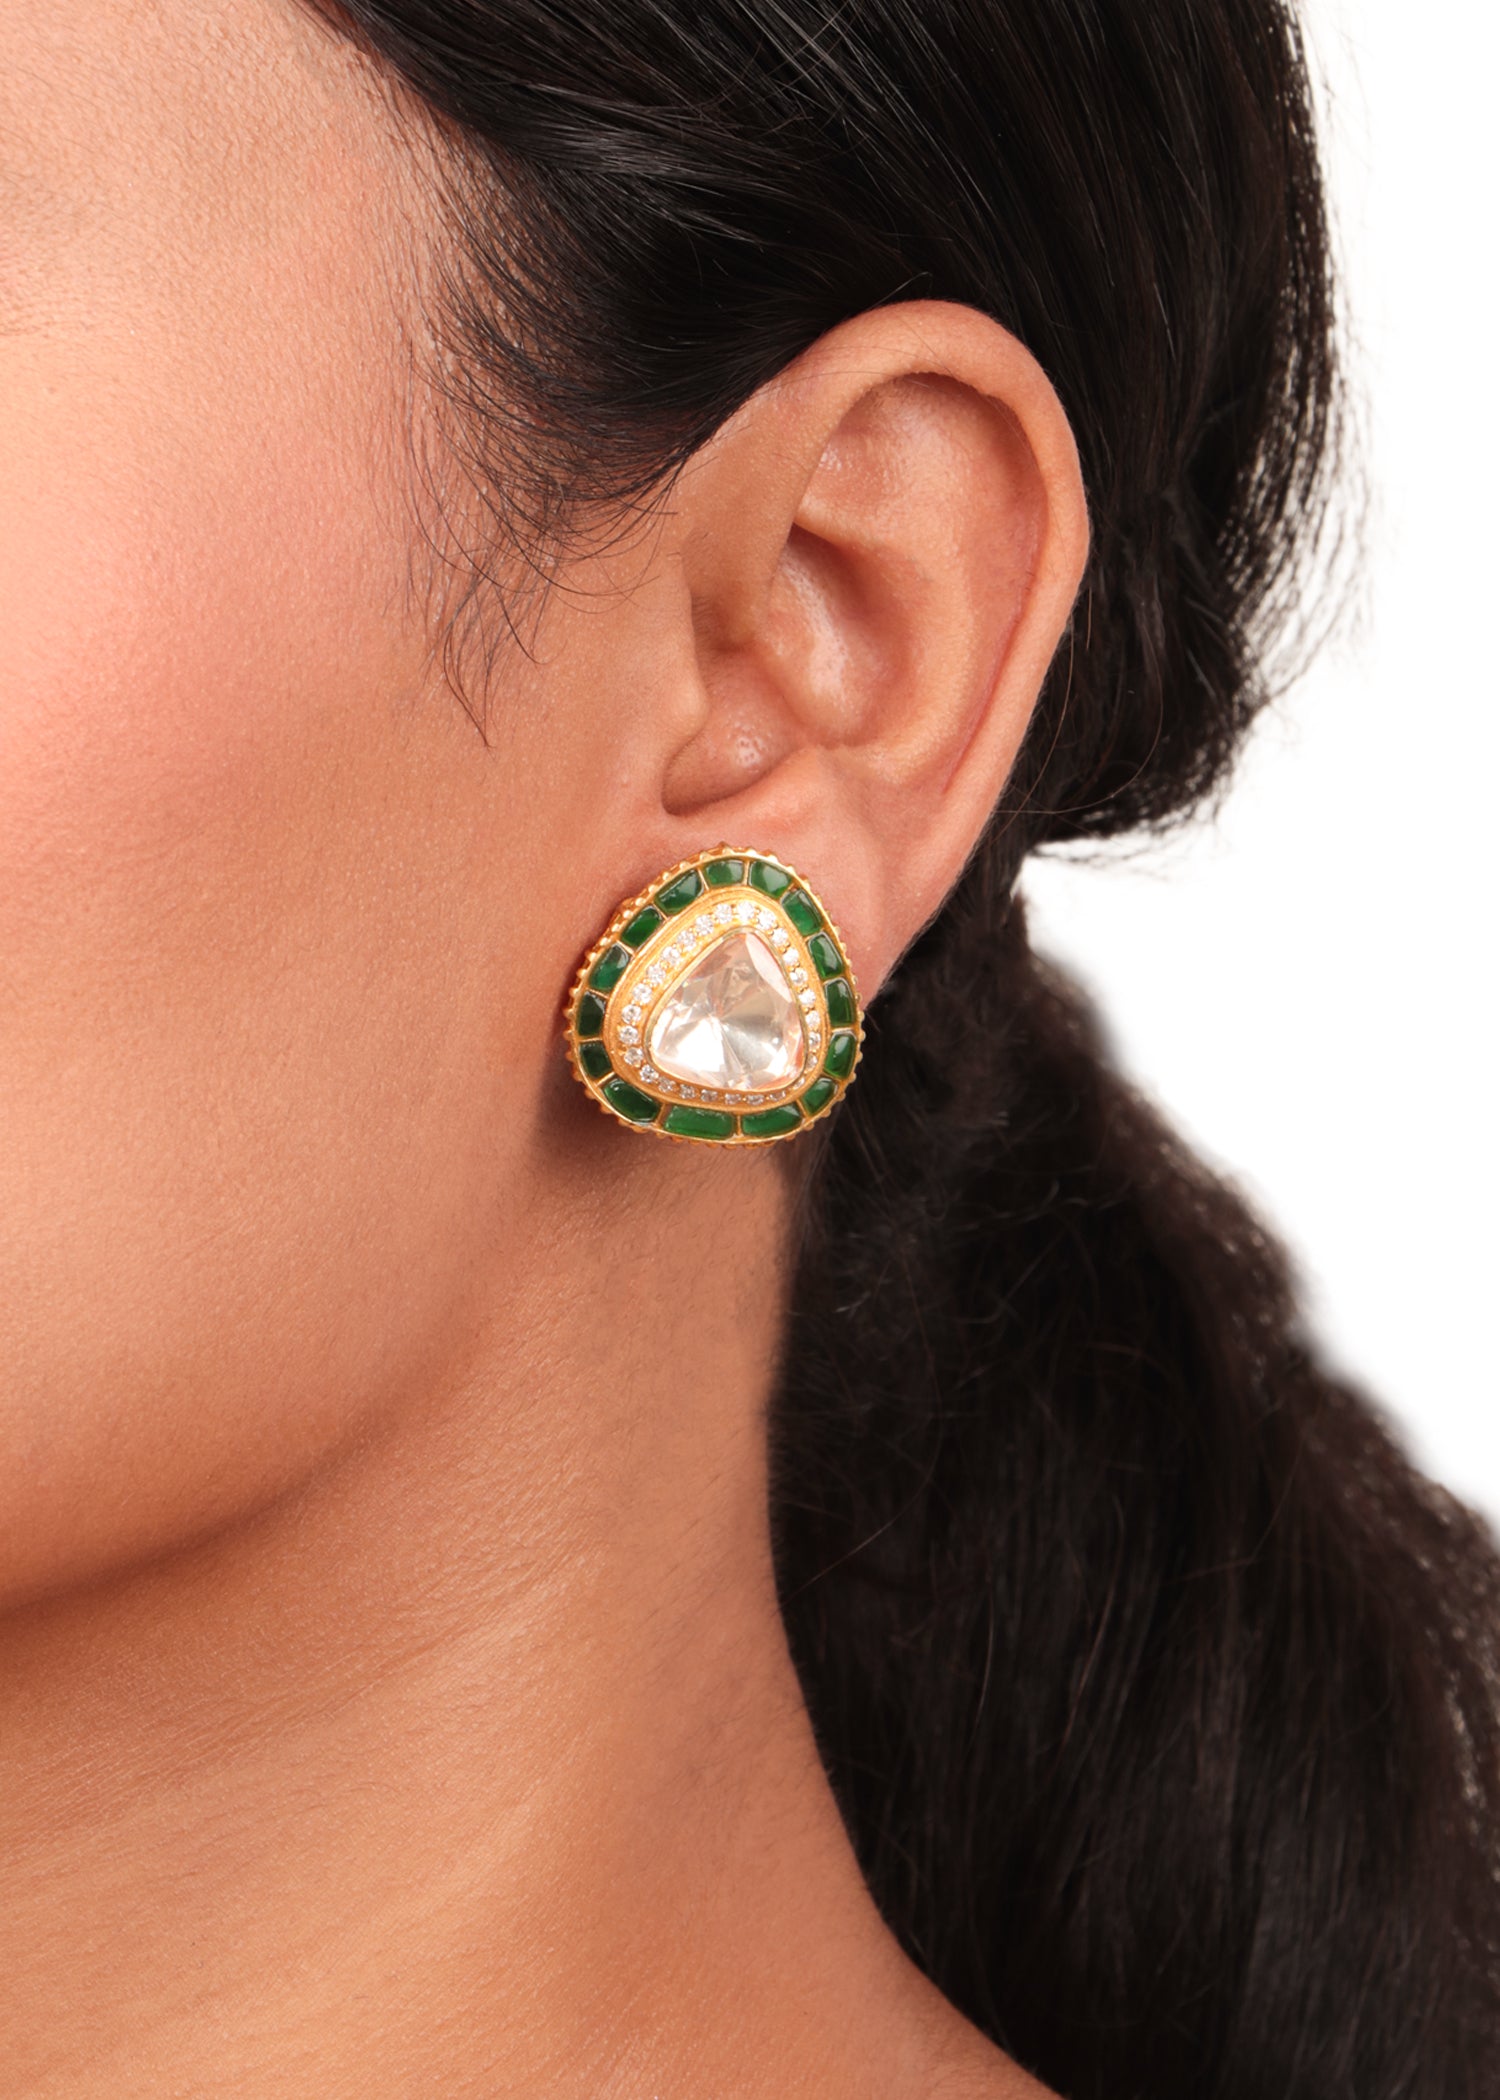 Buy Big Green Earrings , Green Fuchsia Earrings , Large Green Ab Earrings , Large  Green Rhinestone Earrings , Crystal Chandelier Online in India - Etsy